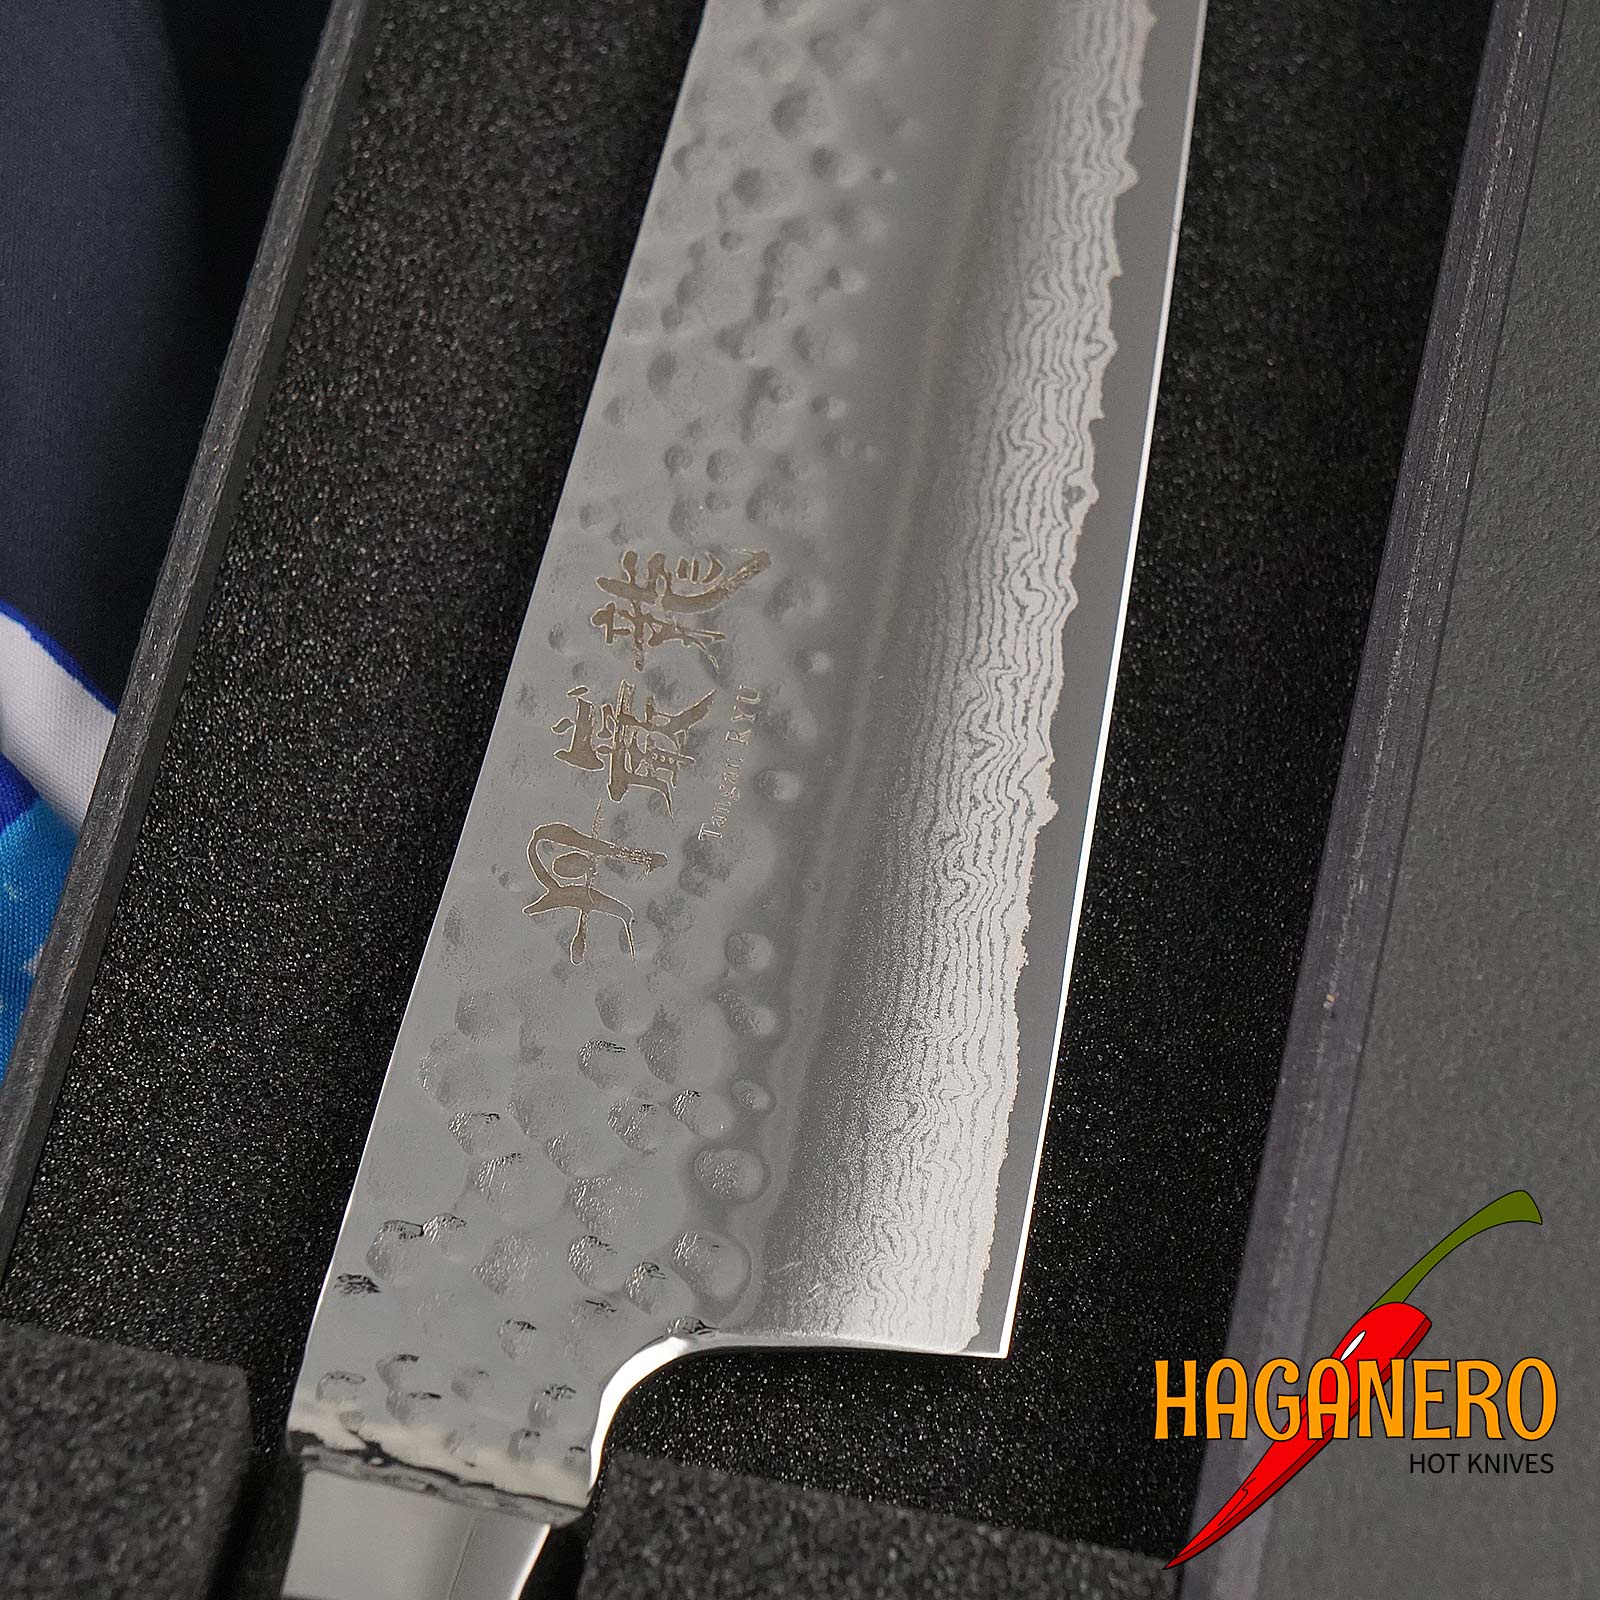 Gyuto japanisches Küchenmesser Ryusen Hamono Tanganryu TG-502 21cm